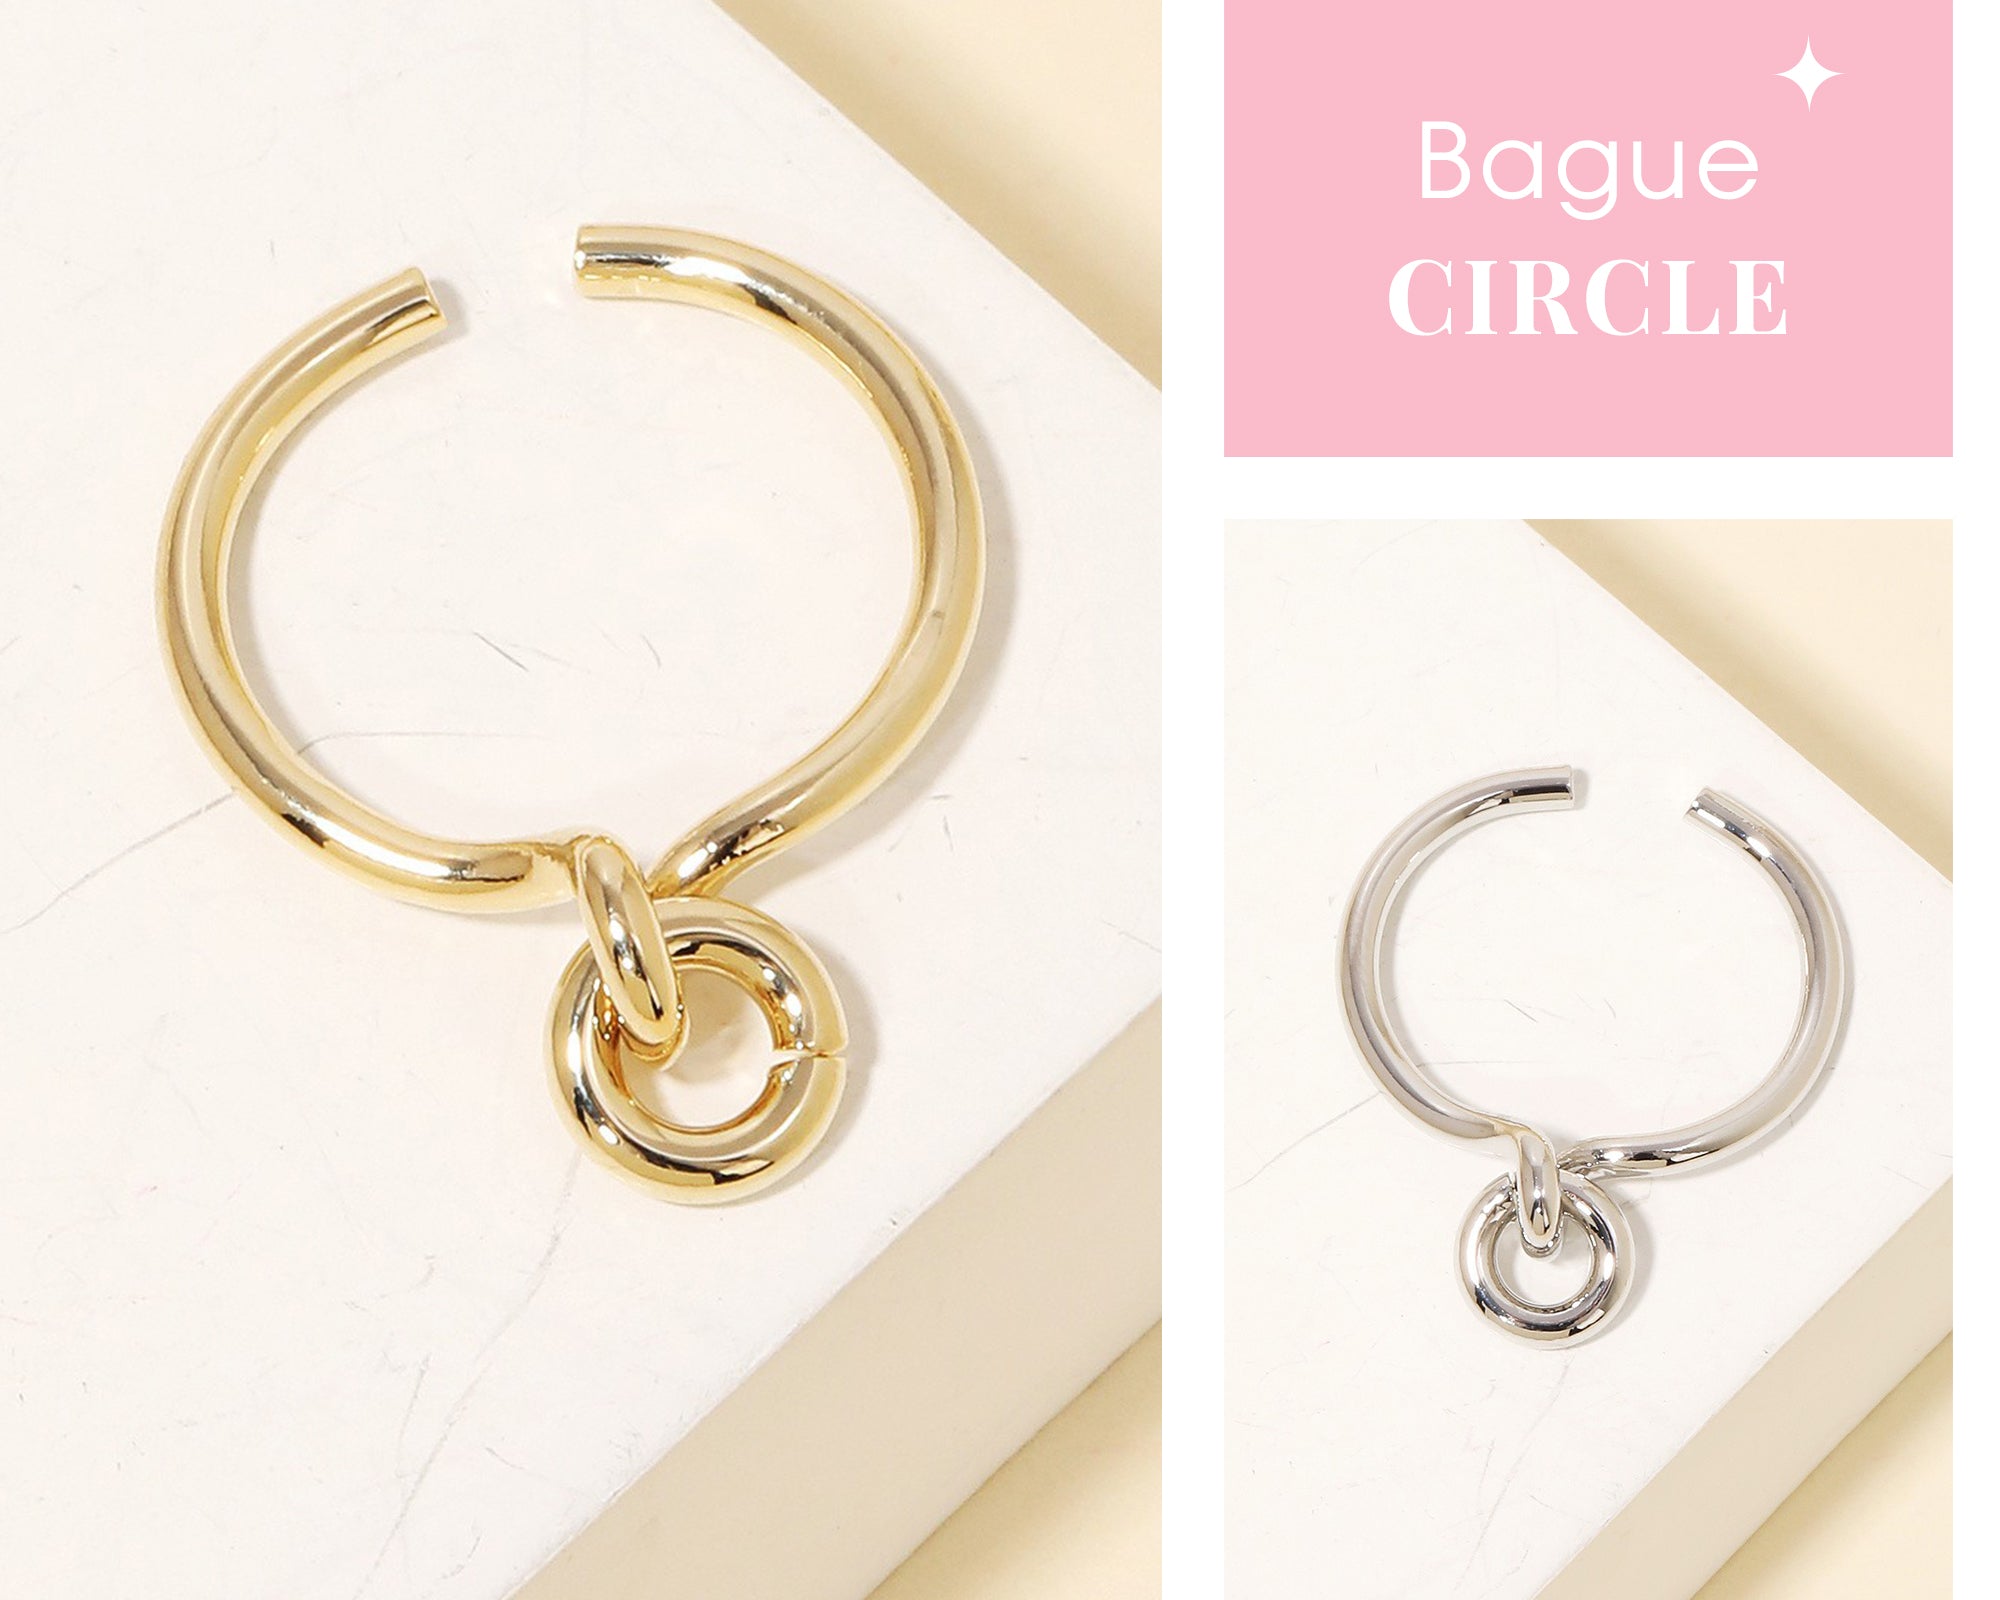 Bague Circle